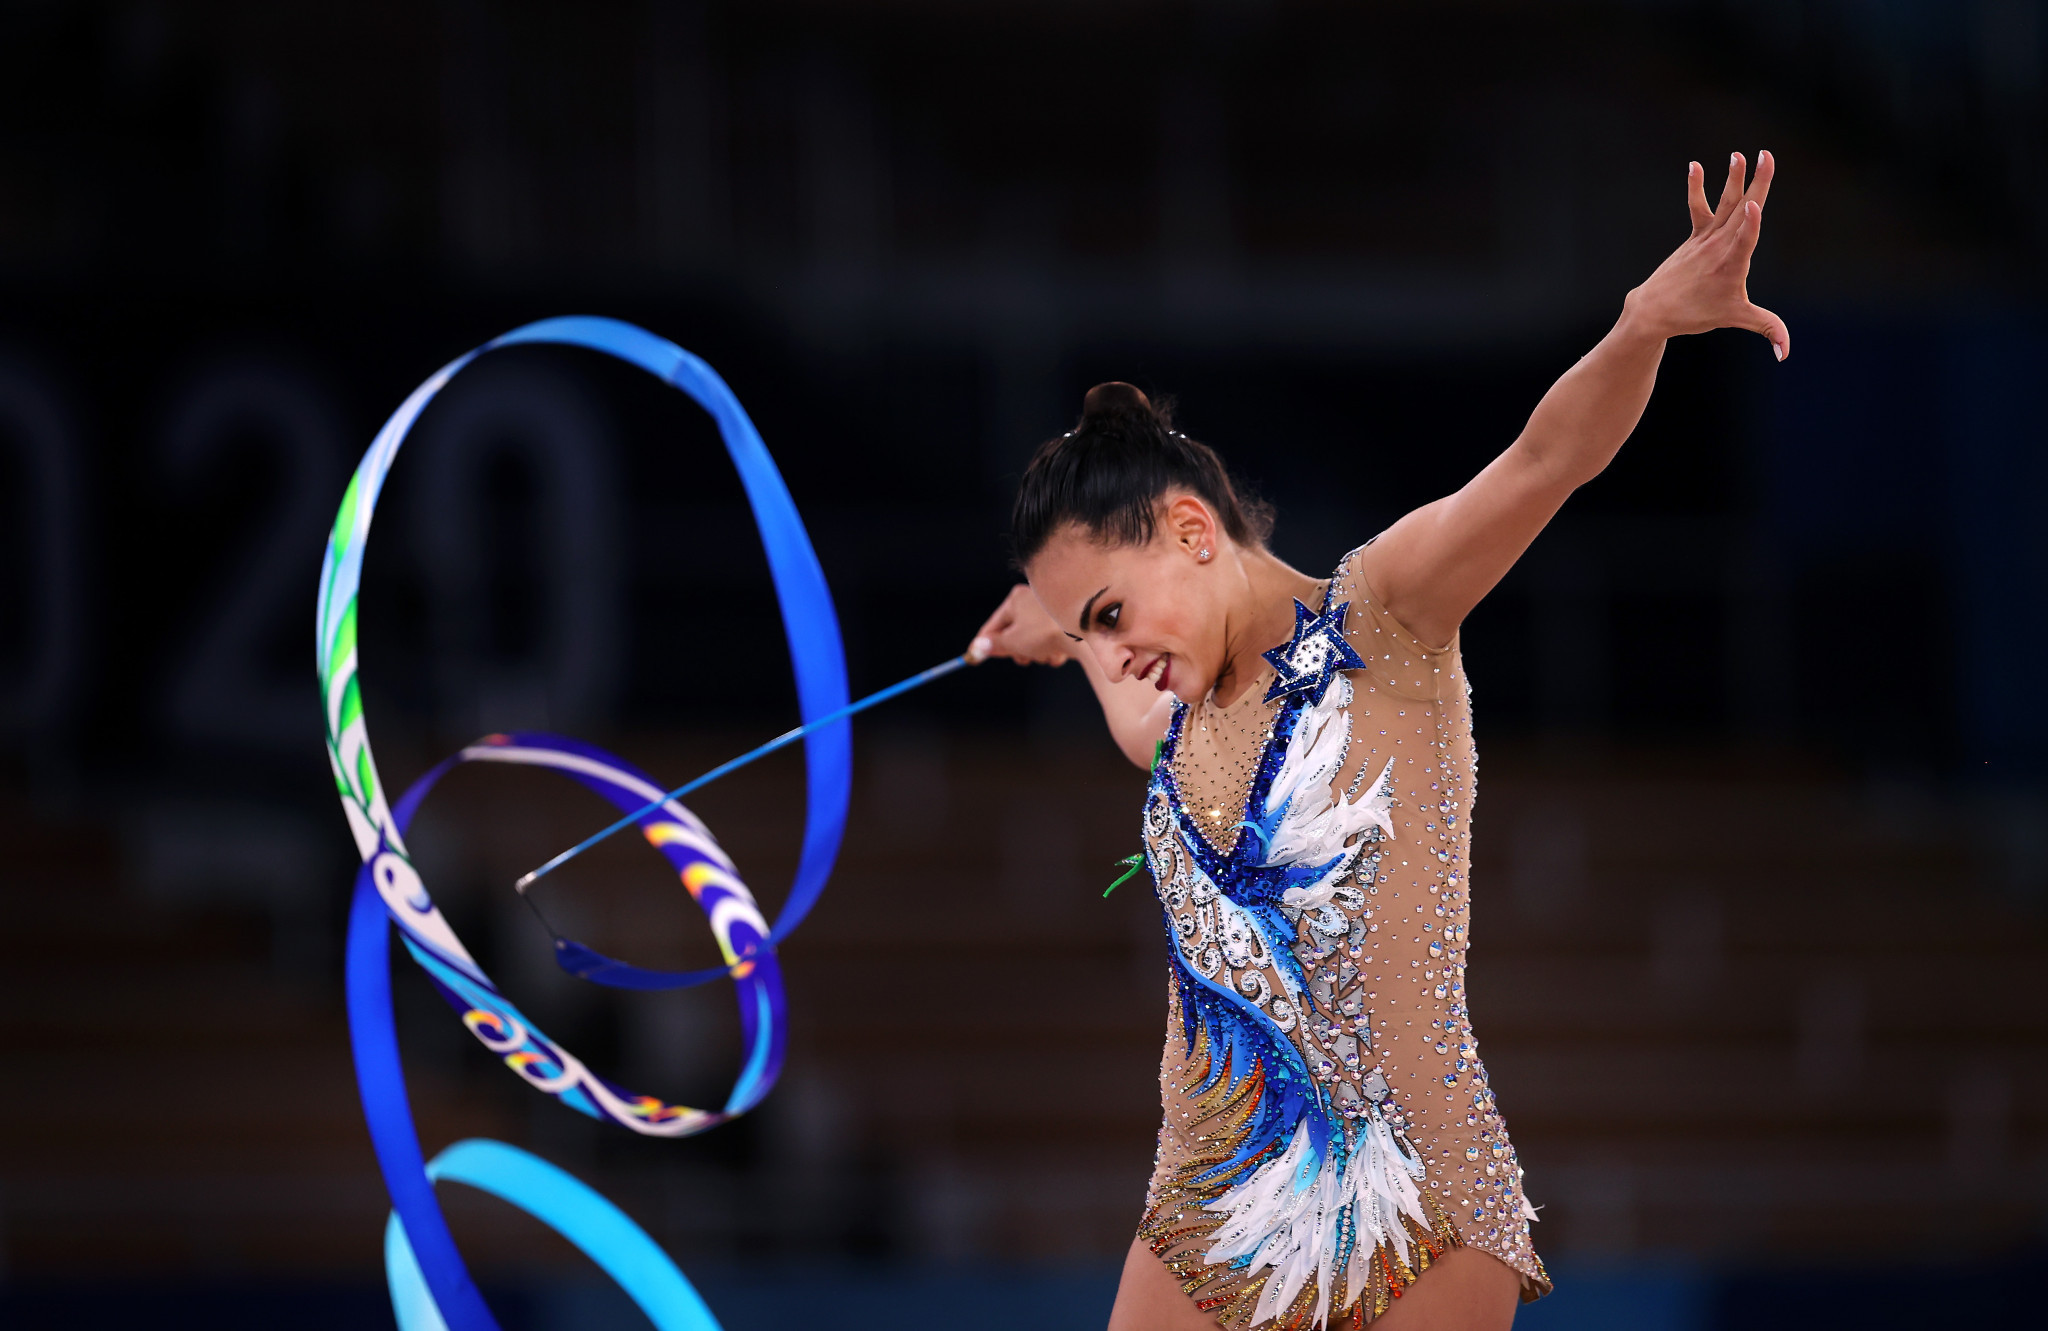 Ліной Ашрам завоювала титул жіночого багатоборства на Олімпіаді в Токіо 2020 року © Getty Images